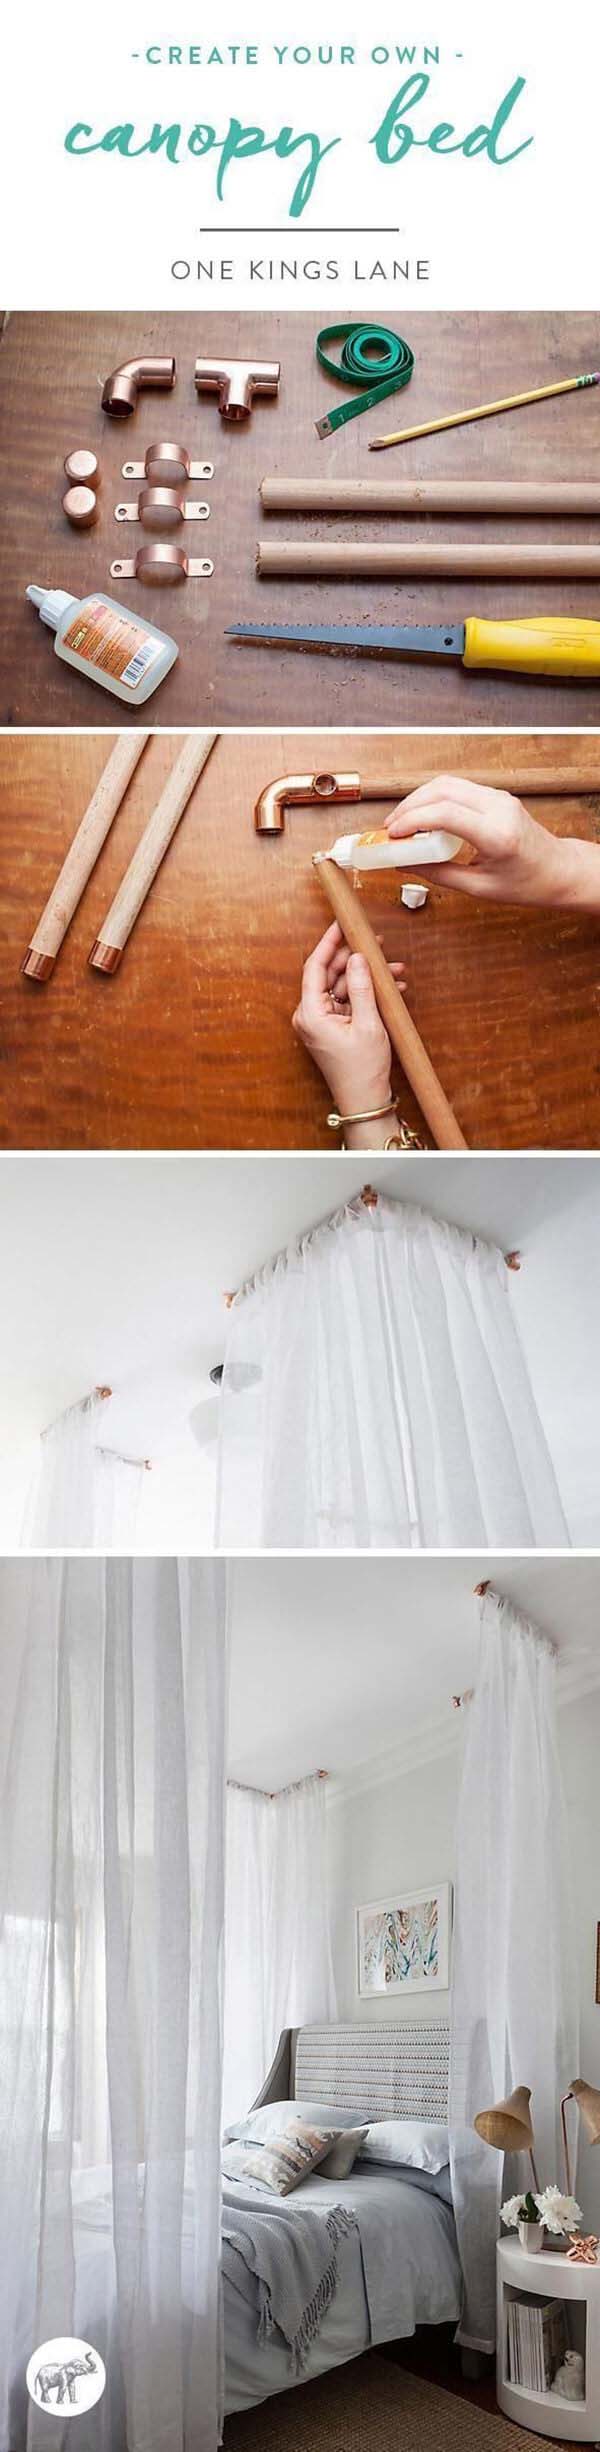 Sweet Low-Cost Canopy Bed Idea #diy #weekendproject #decorhomeideas